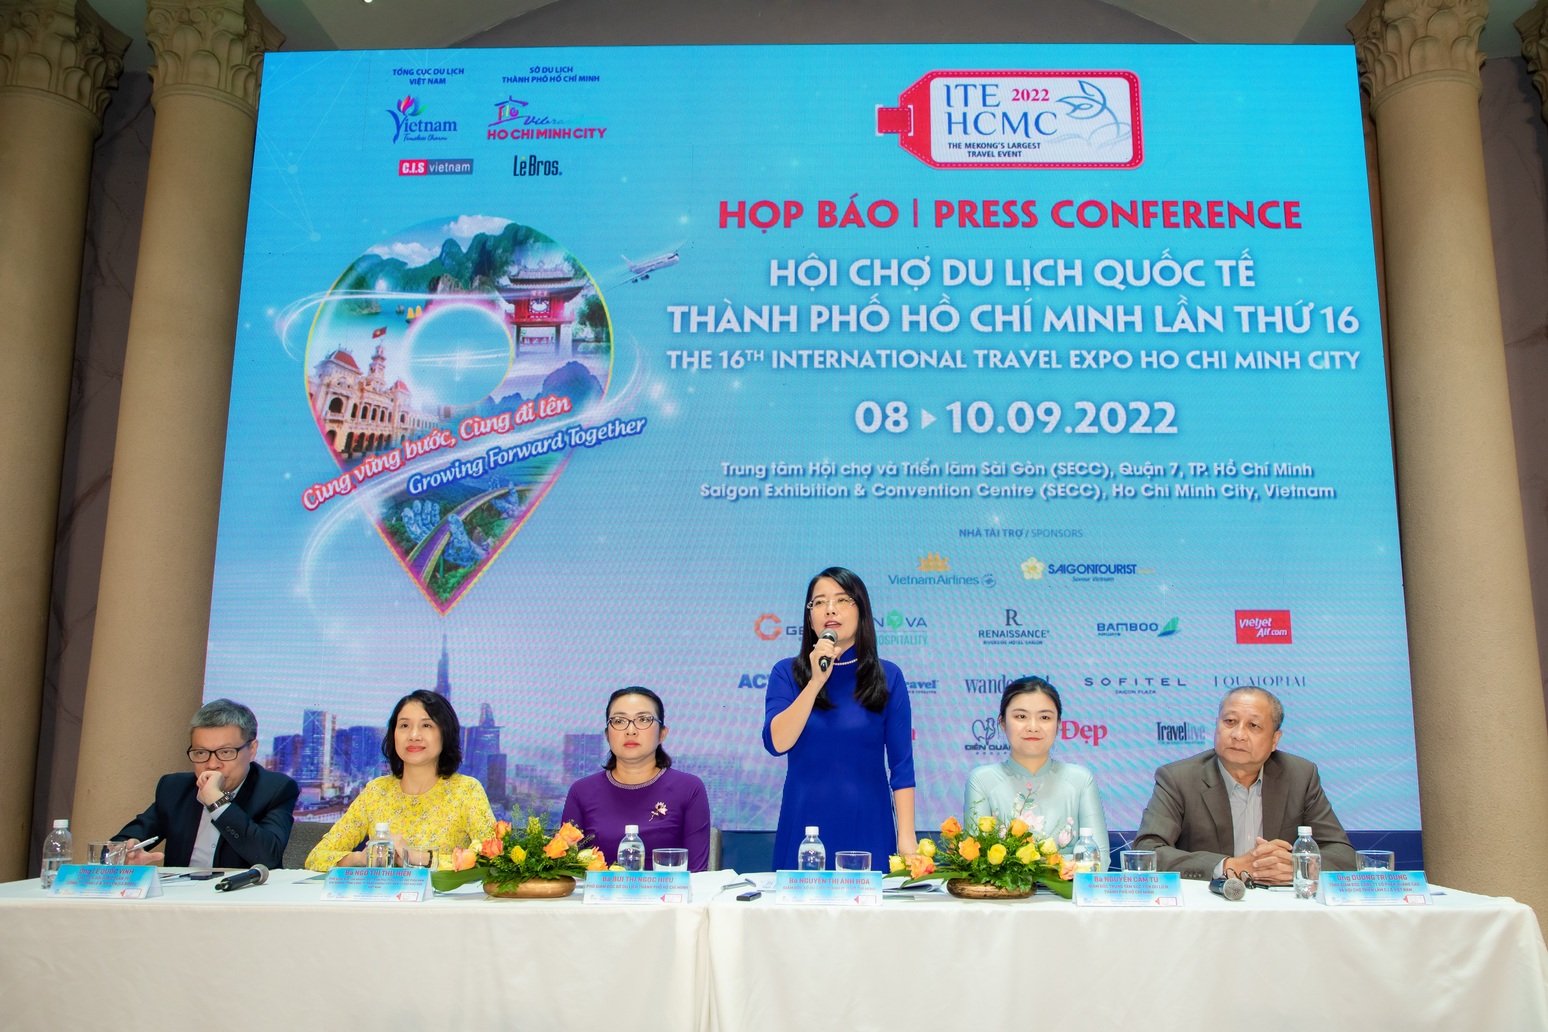 Hội chợ Du lịch Quốc tế ITE HCMC 2022 chính thức khởi động với chủ đề :